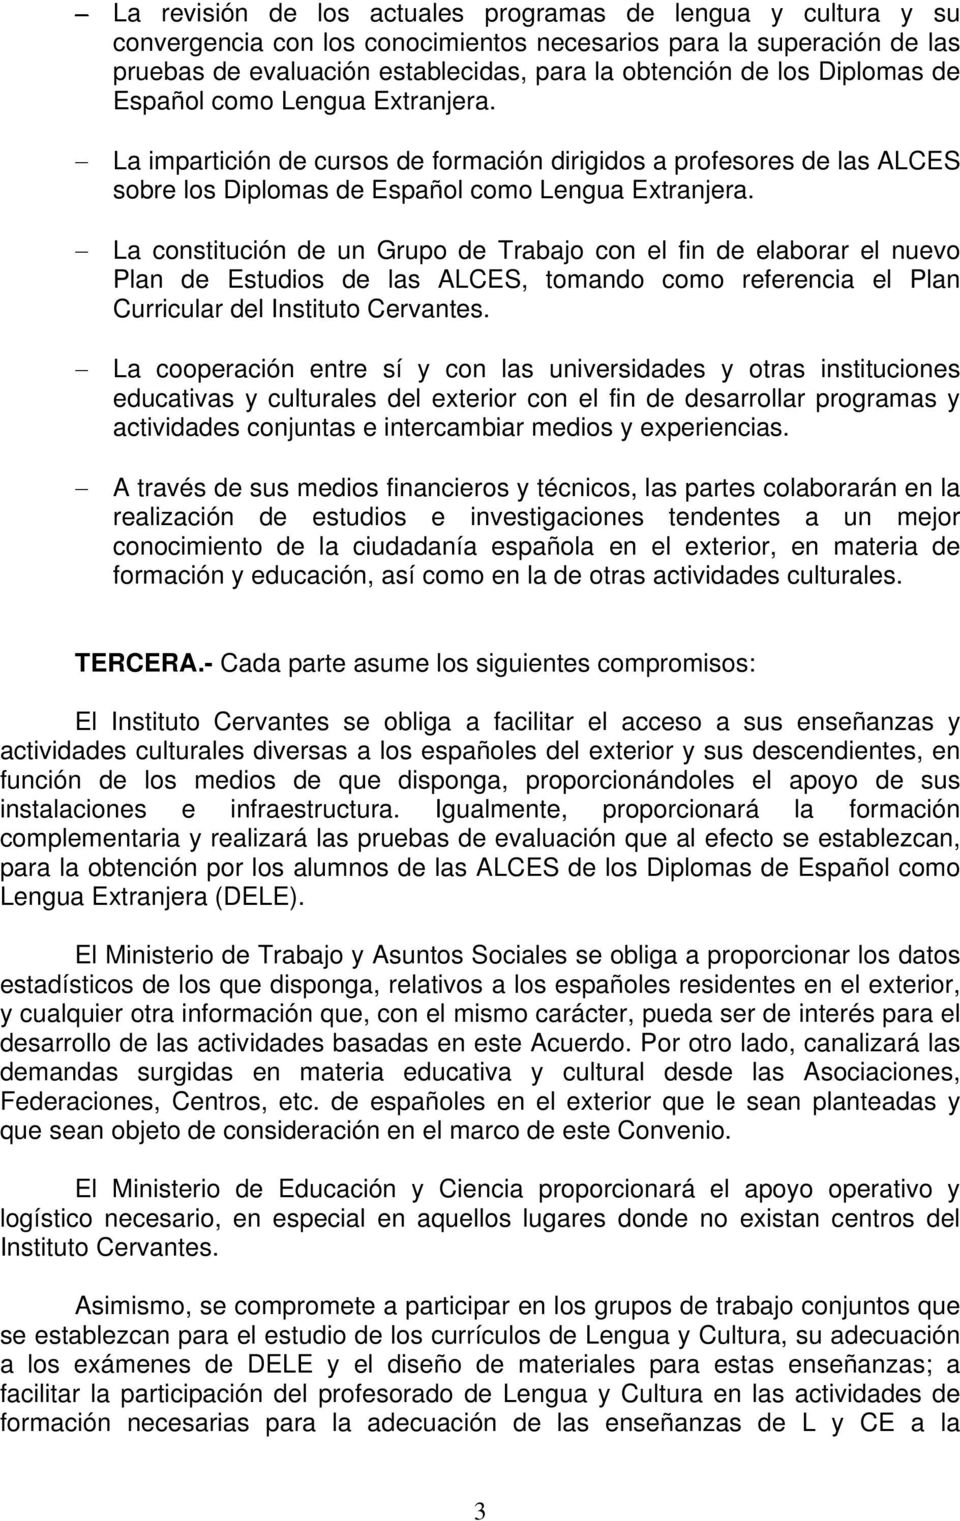 La constitución de un Grupo de Trabajo con el fin de elaborar el nuevo Plan de Estudios de las ALCES, tomando como referencia el Plan Curricular del Instituto Cervantes.